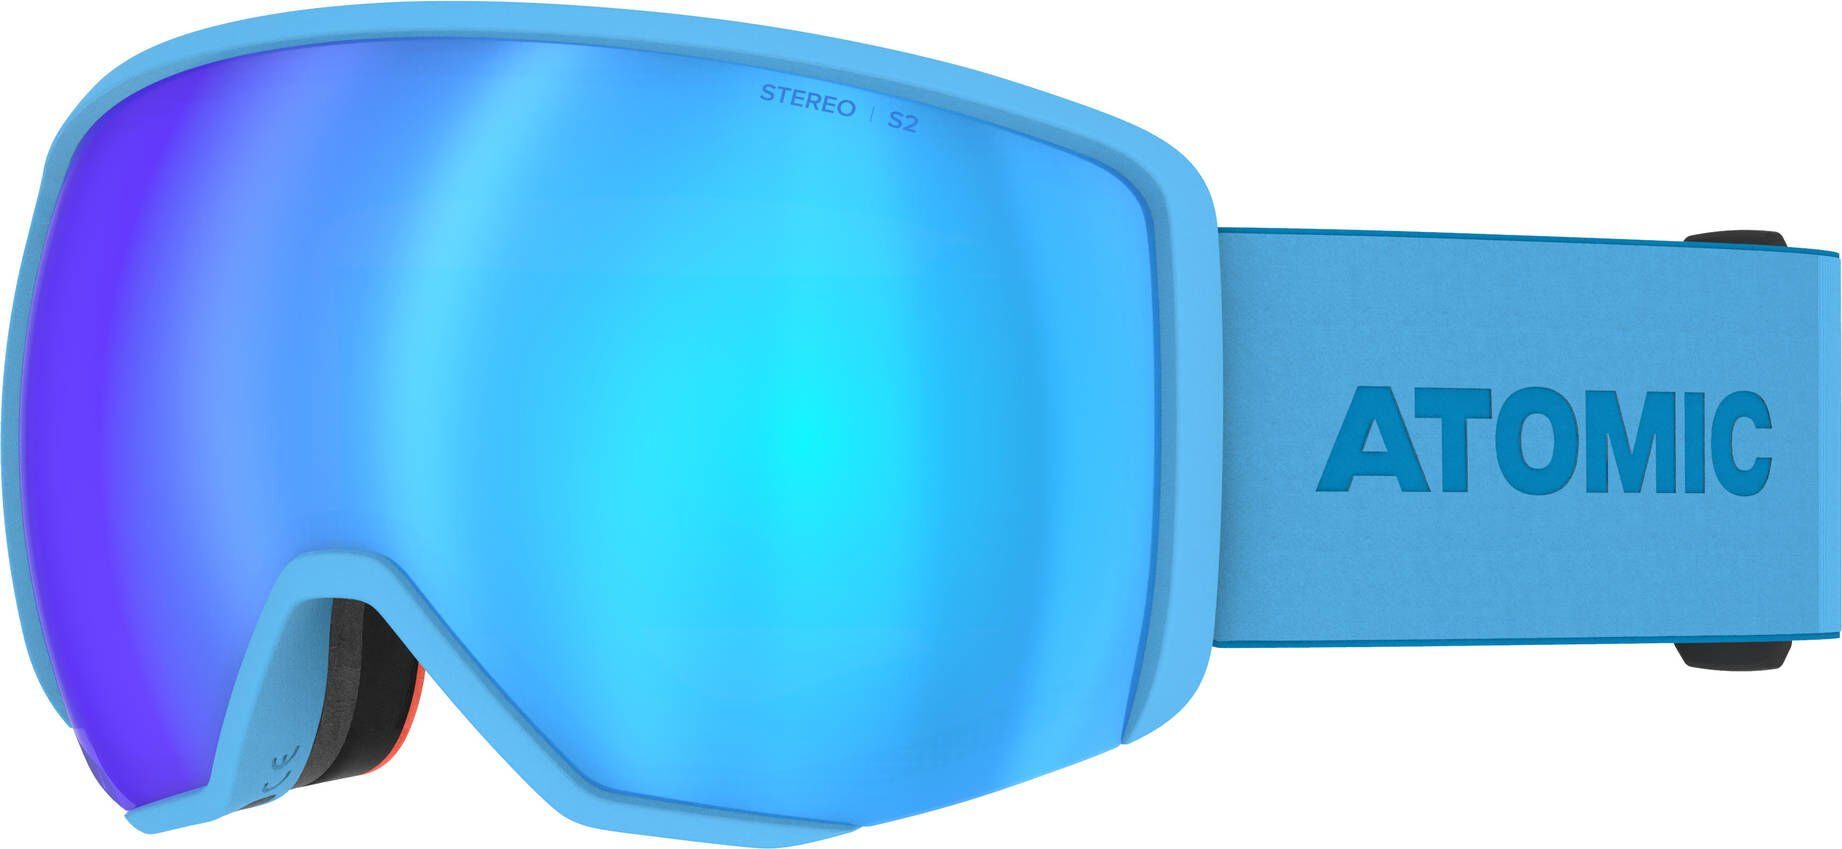 Atomic Skibrille Skibrille REVENT L STEREO BLUE | Brillen